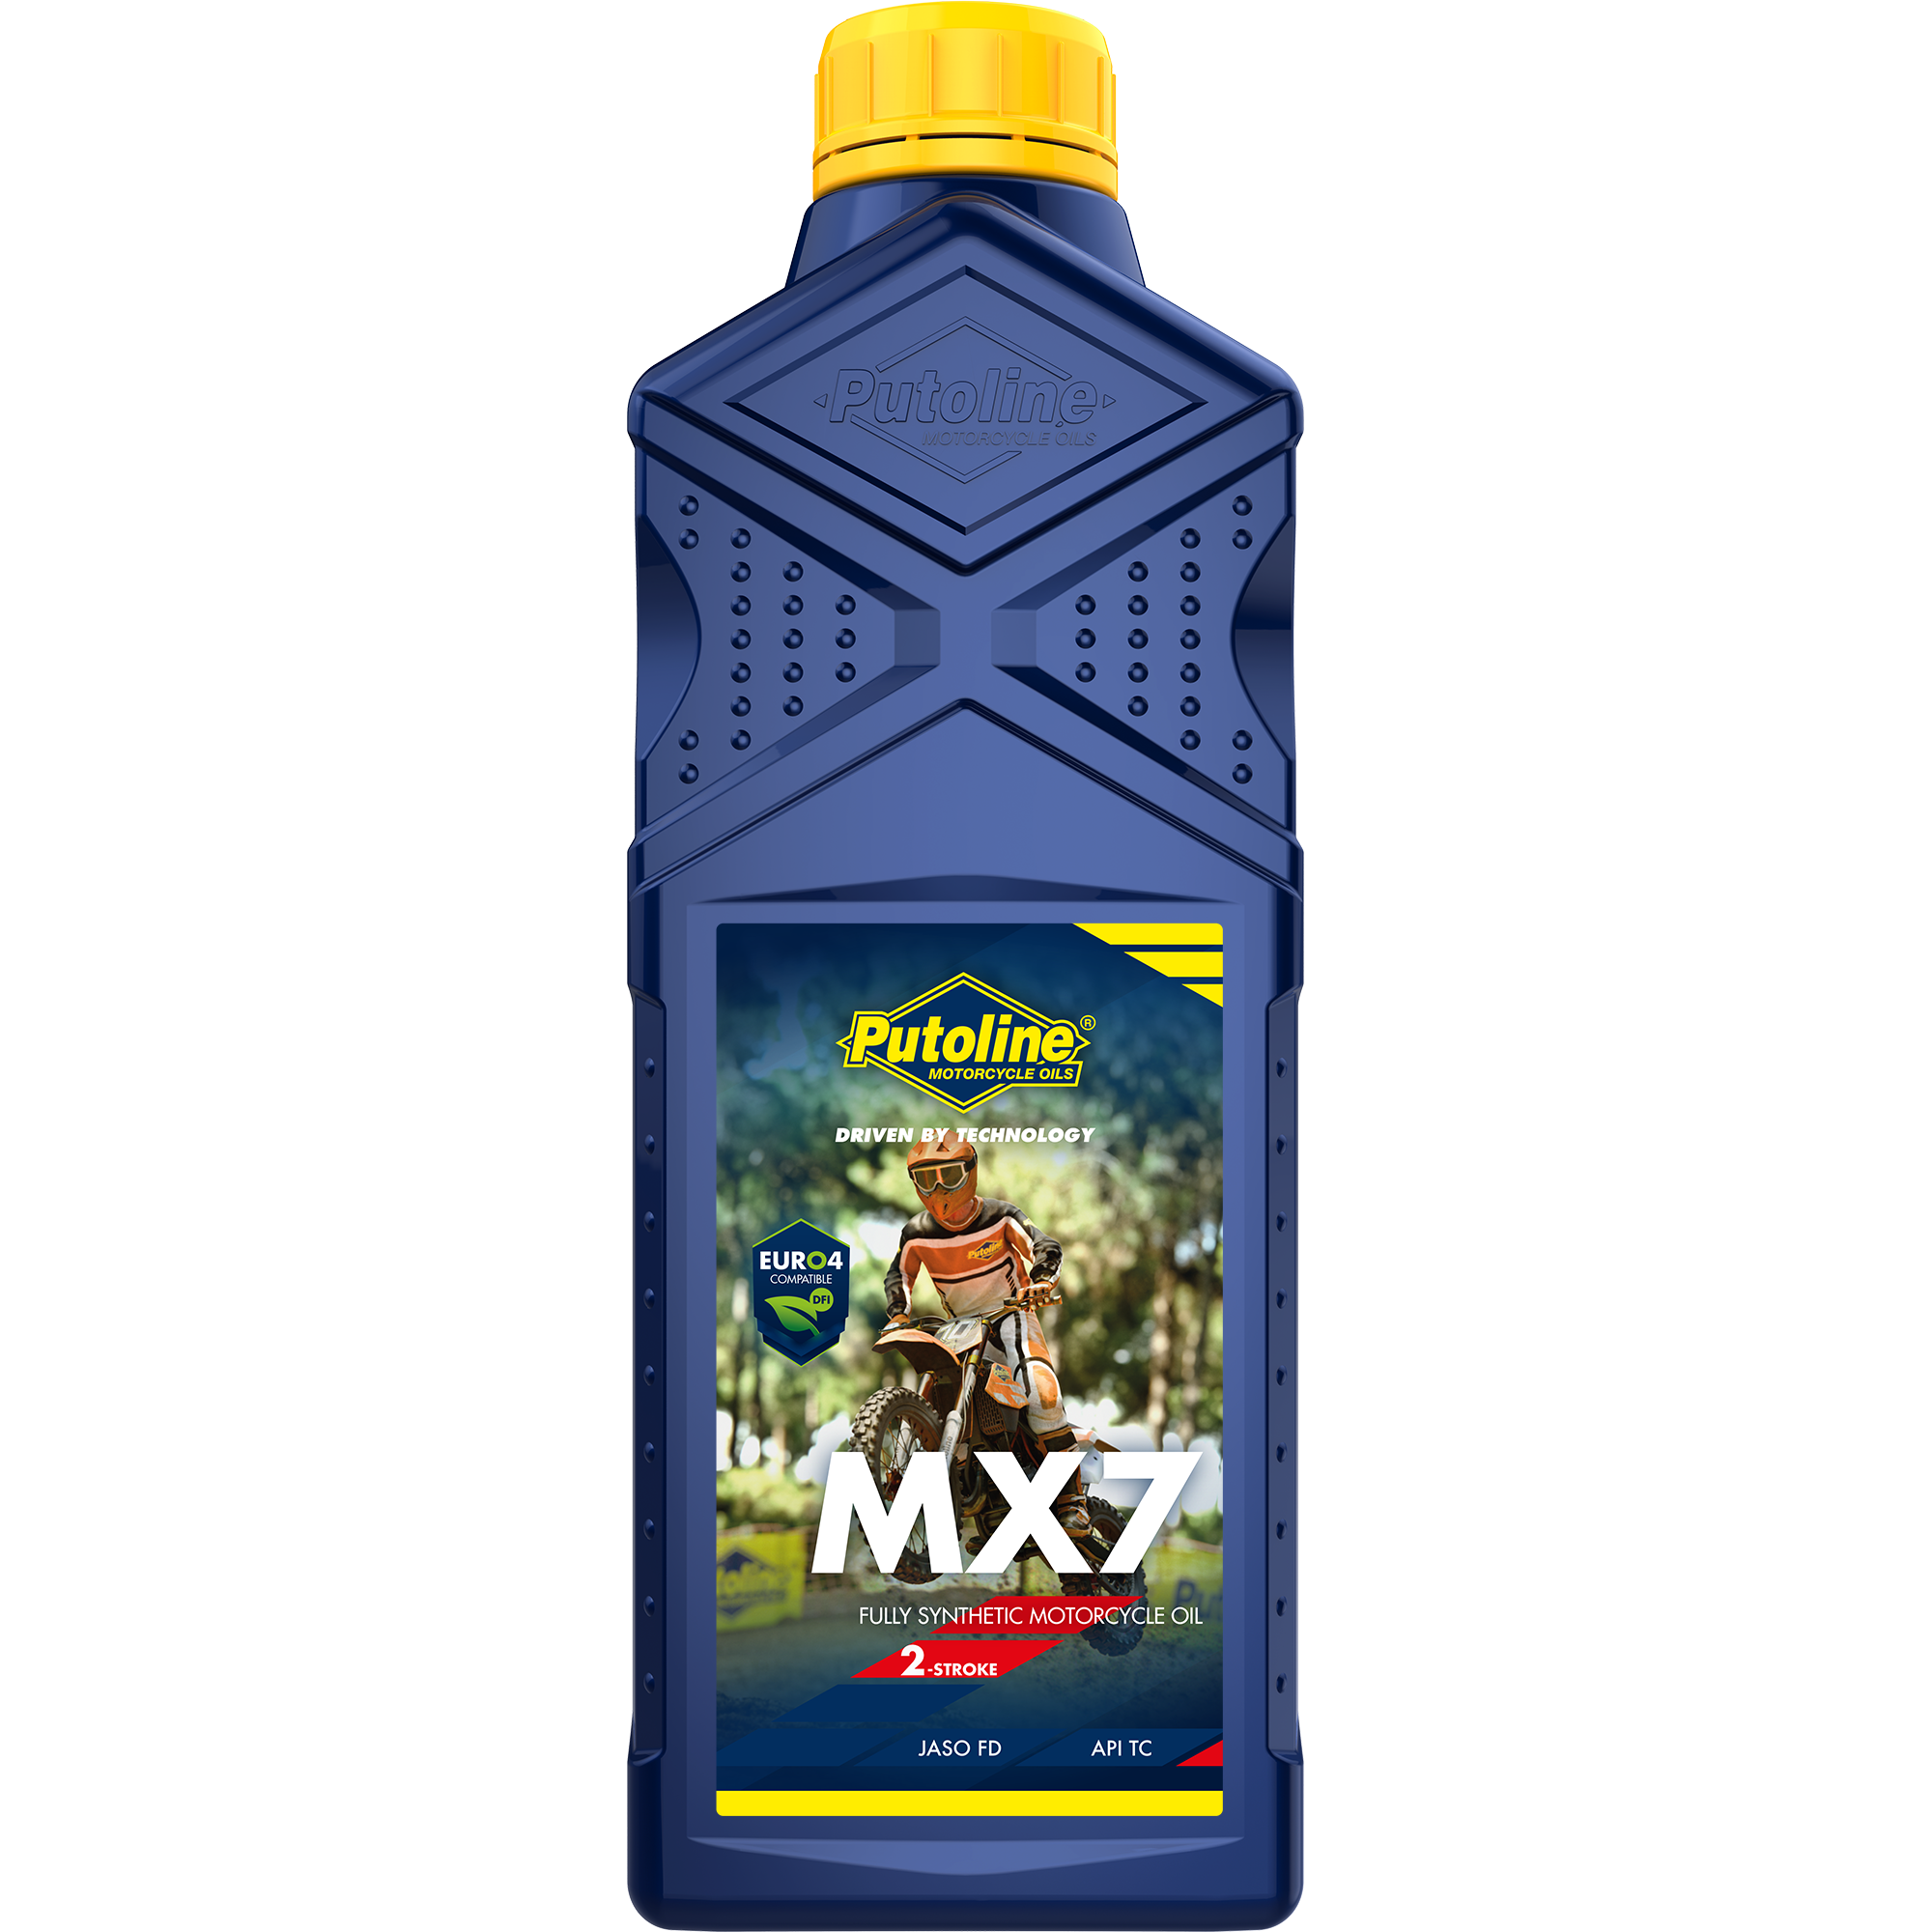 Putoline MX 7, 12 x 1 lt detail 2